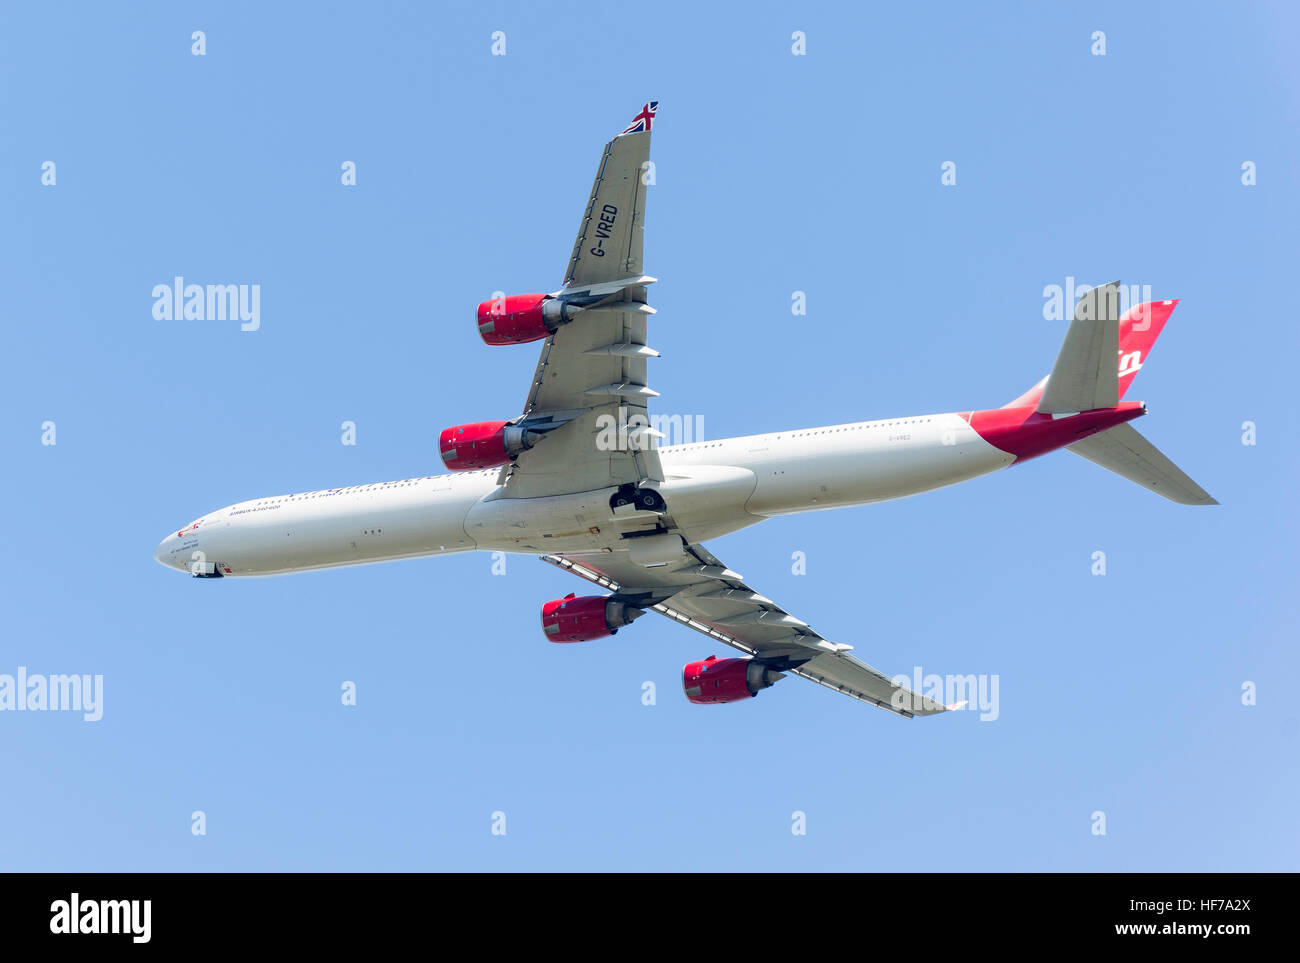 Airbus A340-642 Virgin Atlantic décollant de l'aéroport de Heathrow, Londres, Angleterre, Royaume-Uni Banque D'Images